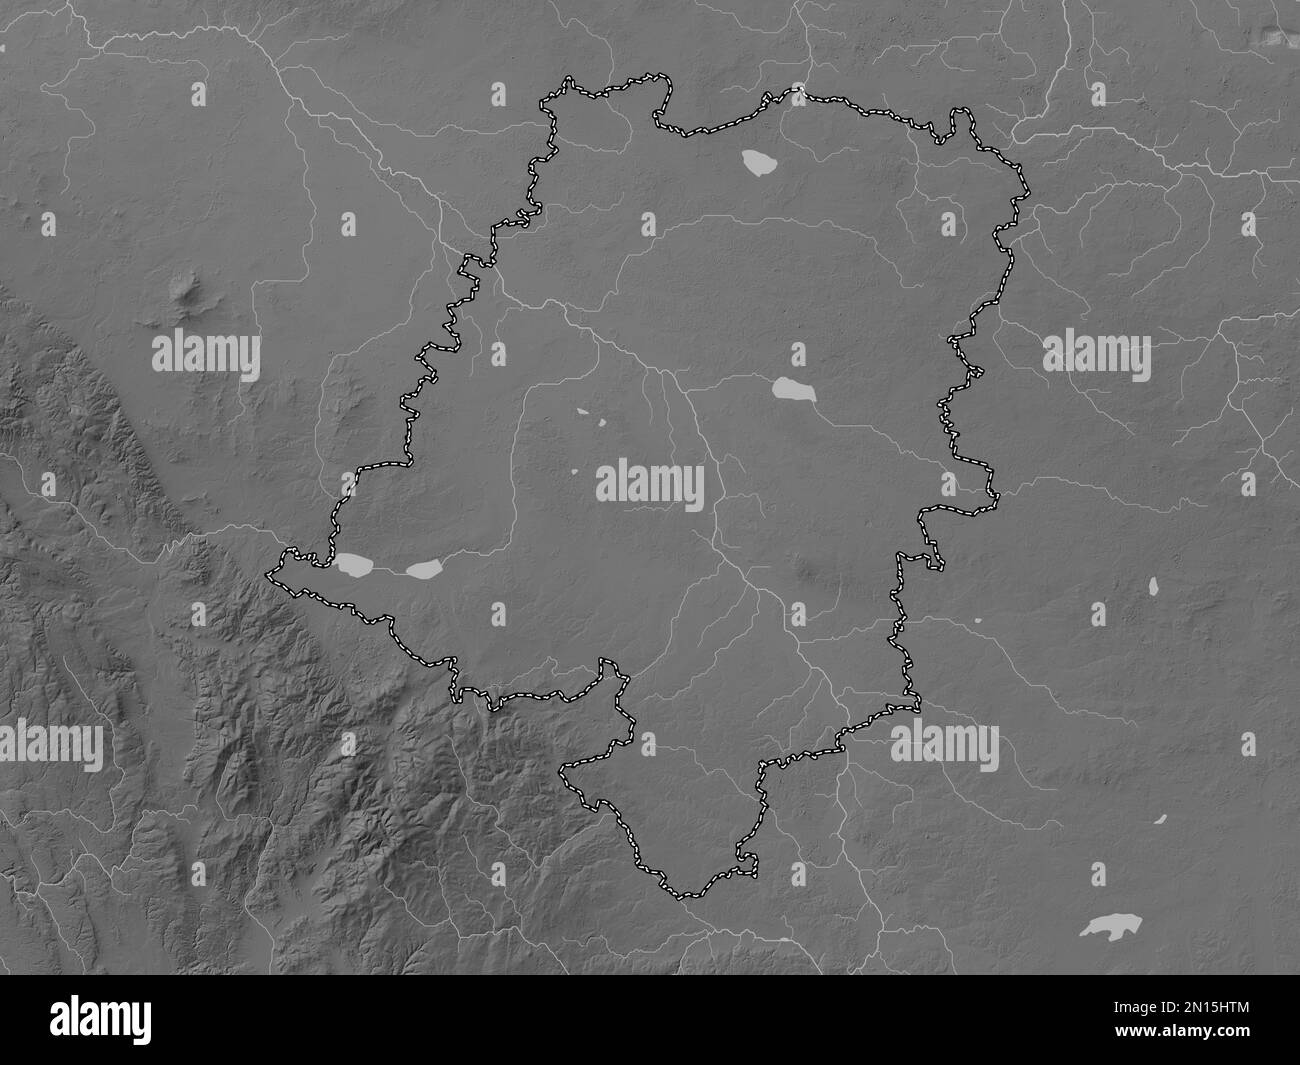 Opolskie, voïvodie|province de Pologne. Carte d'altitude en niveaux de gris avec lacs et rivières Banque D'Images